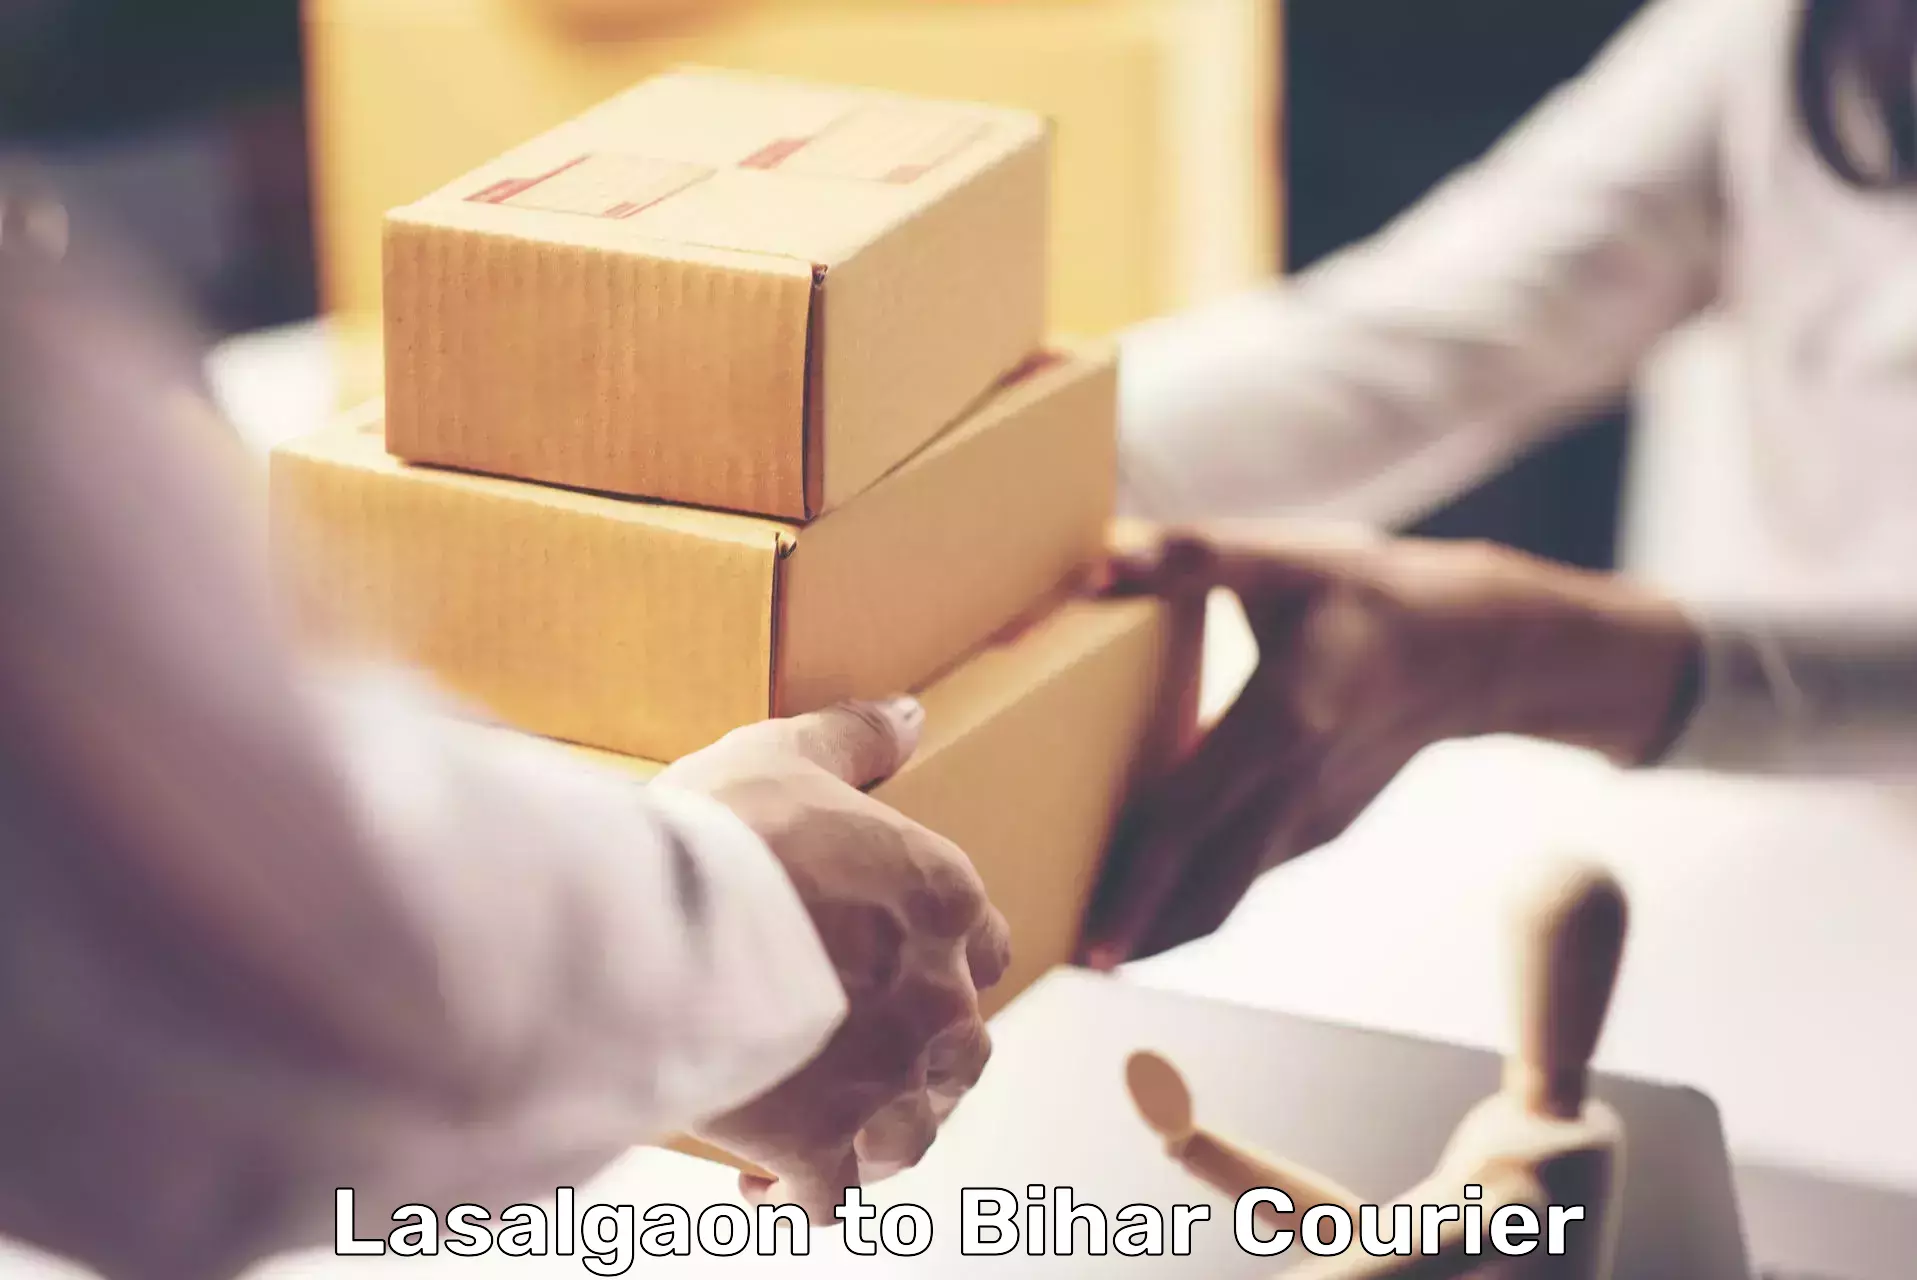 Custom courier packages in Lasalgaon to Bharwara